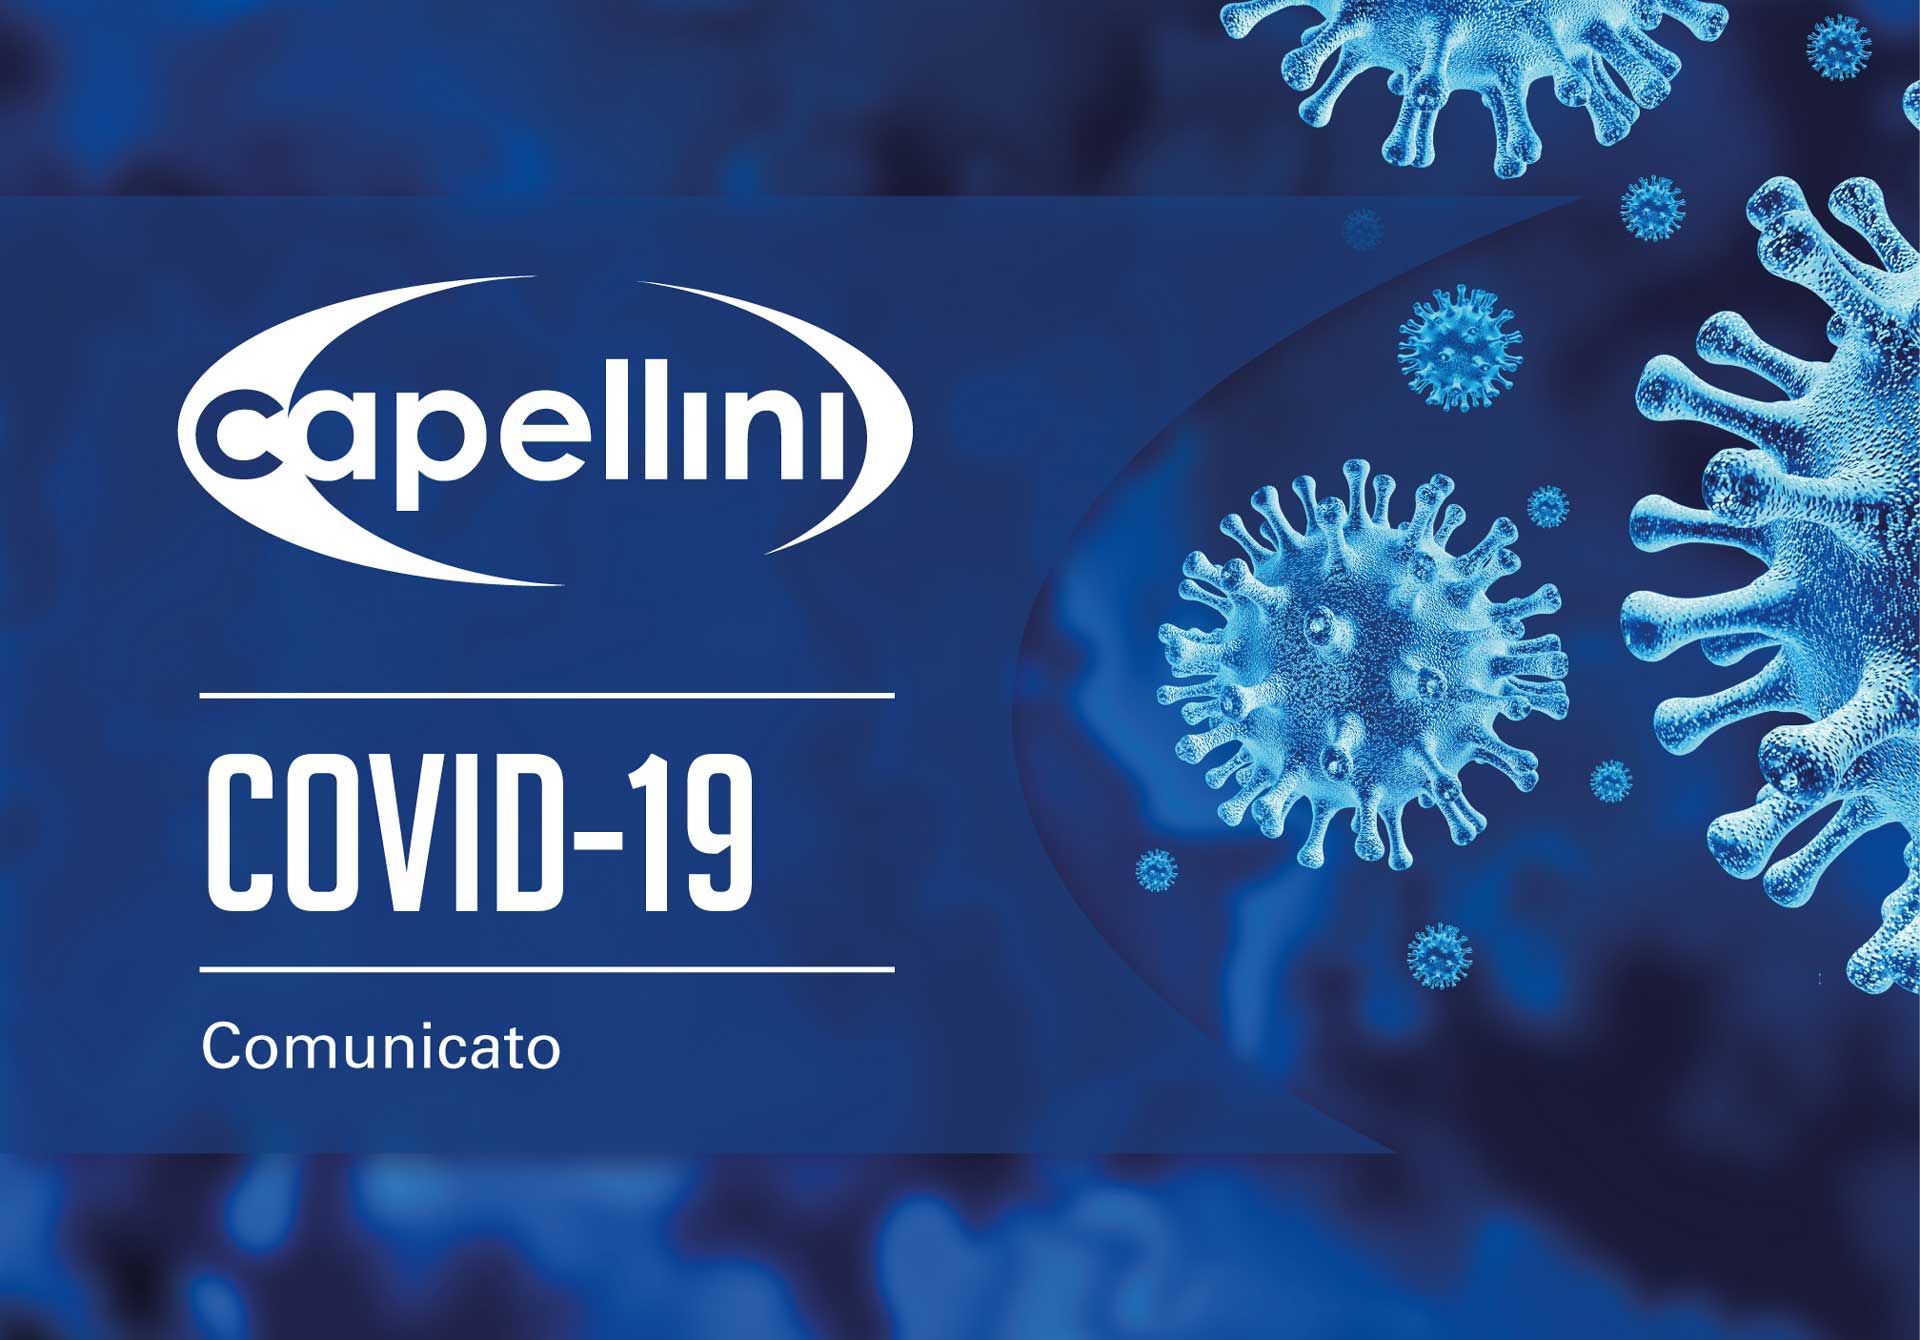 Capellini COVID 19 comunicato v1